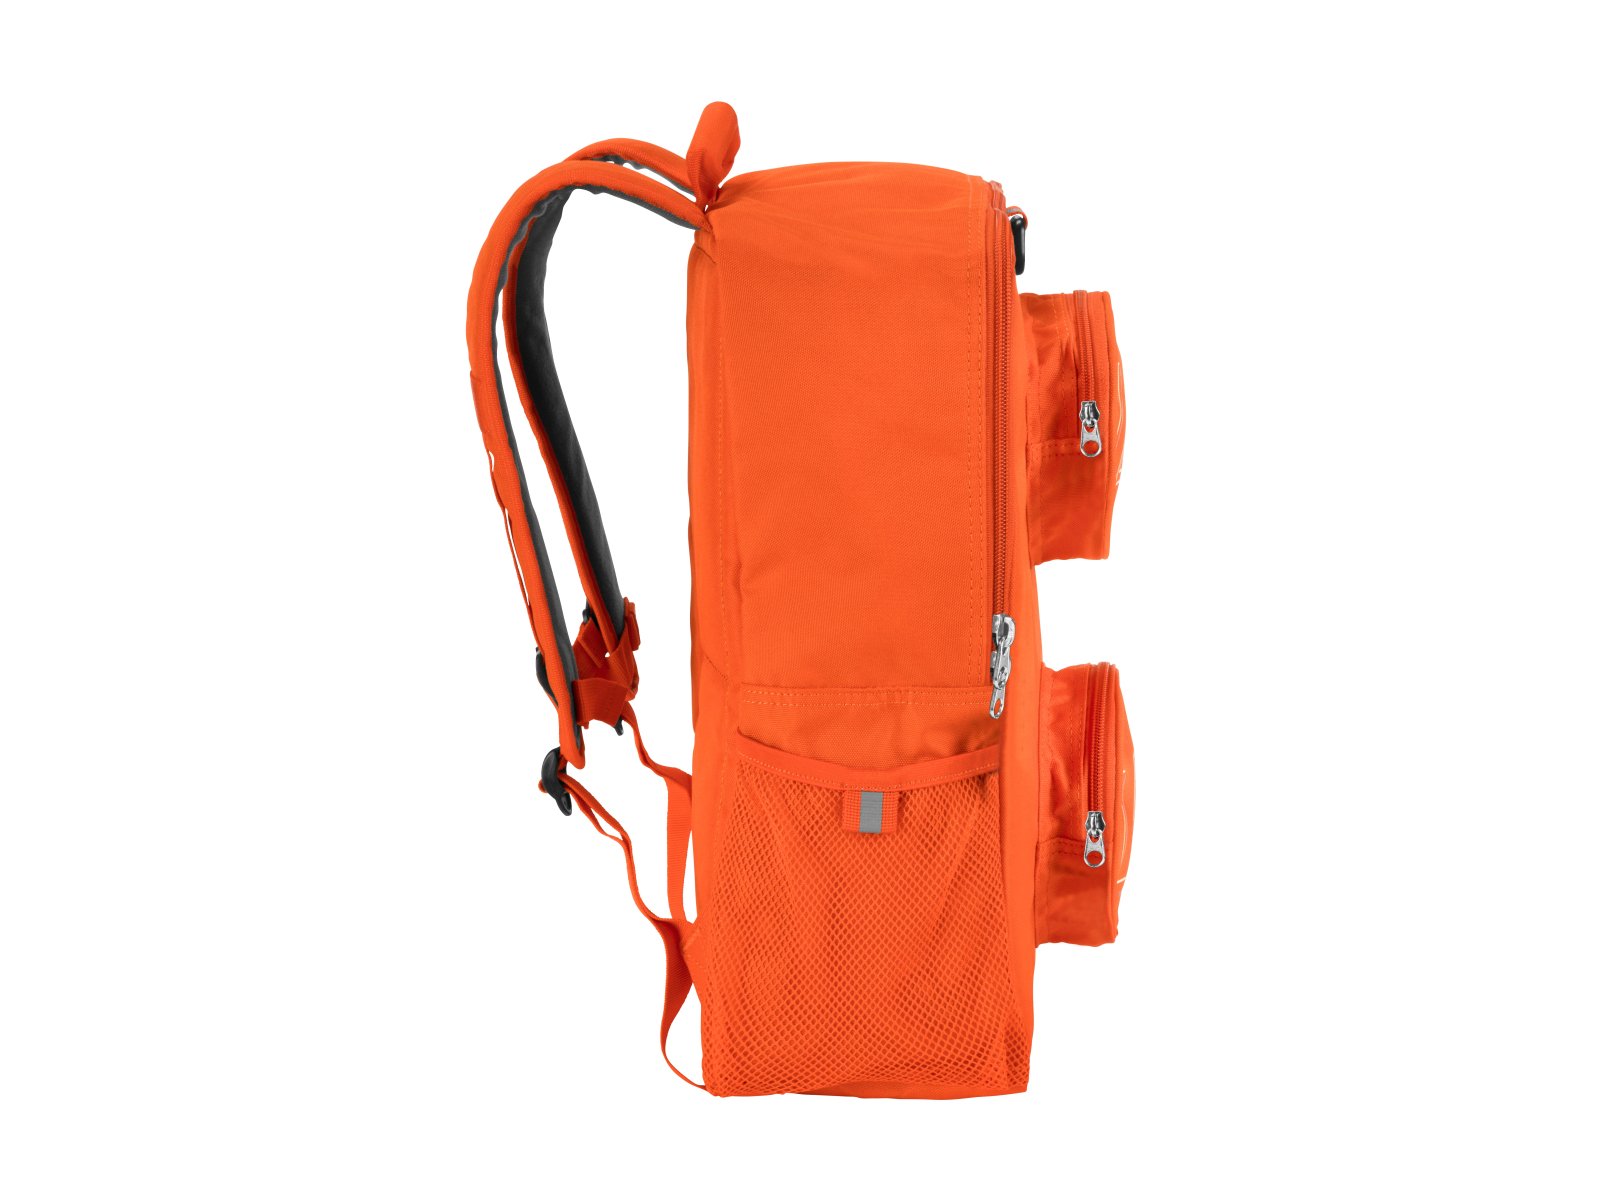 LEGO 5005521 Pomarańczowy plecak w stylu klocka LEGO®